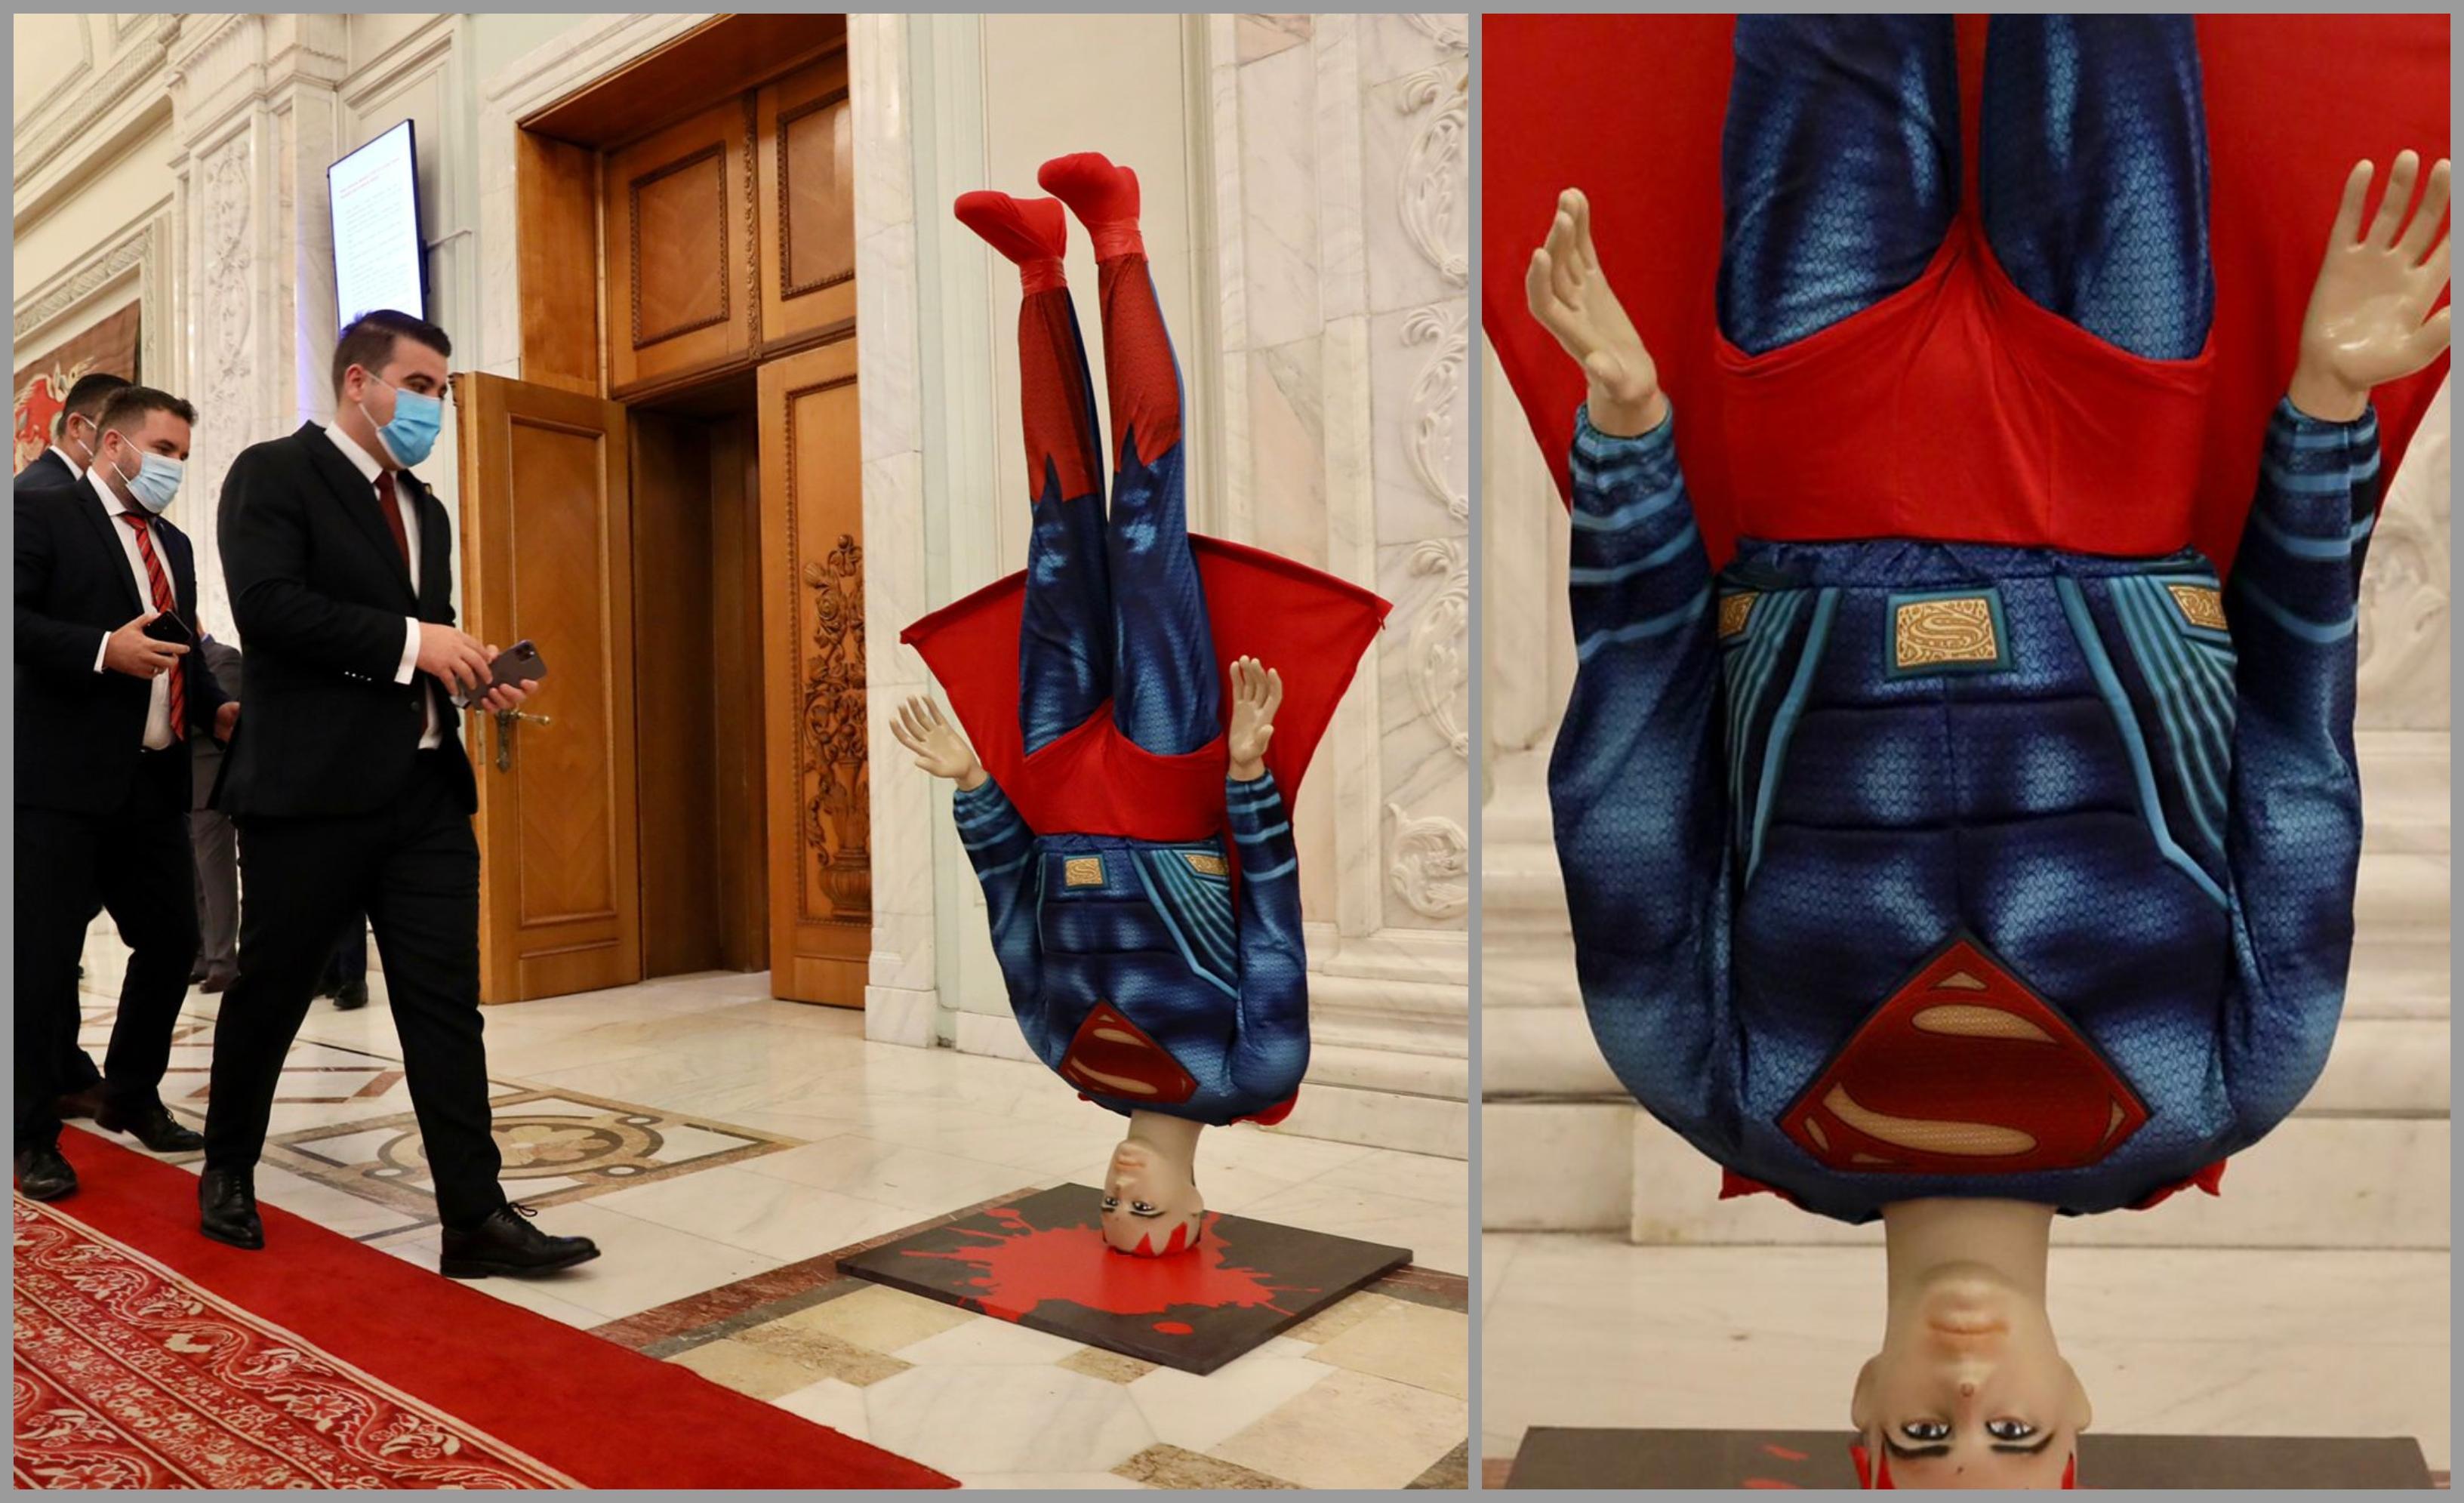 Macheta lui Superman a fost amplasată în faţa sălii de Plen de la Camera Deputaţilor